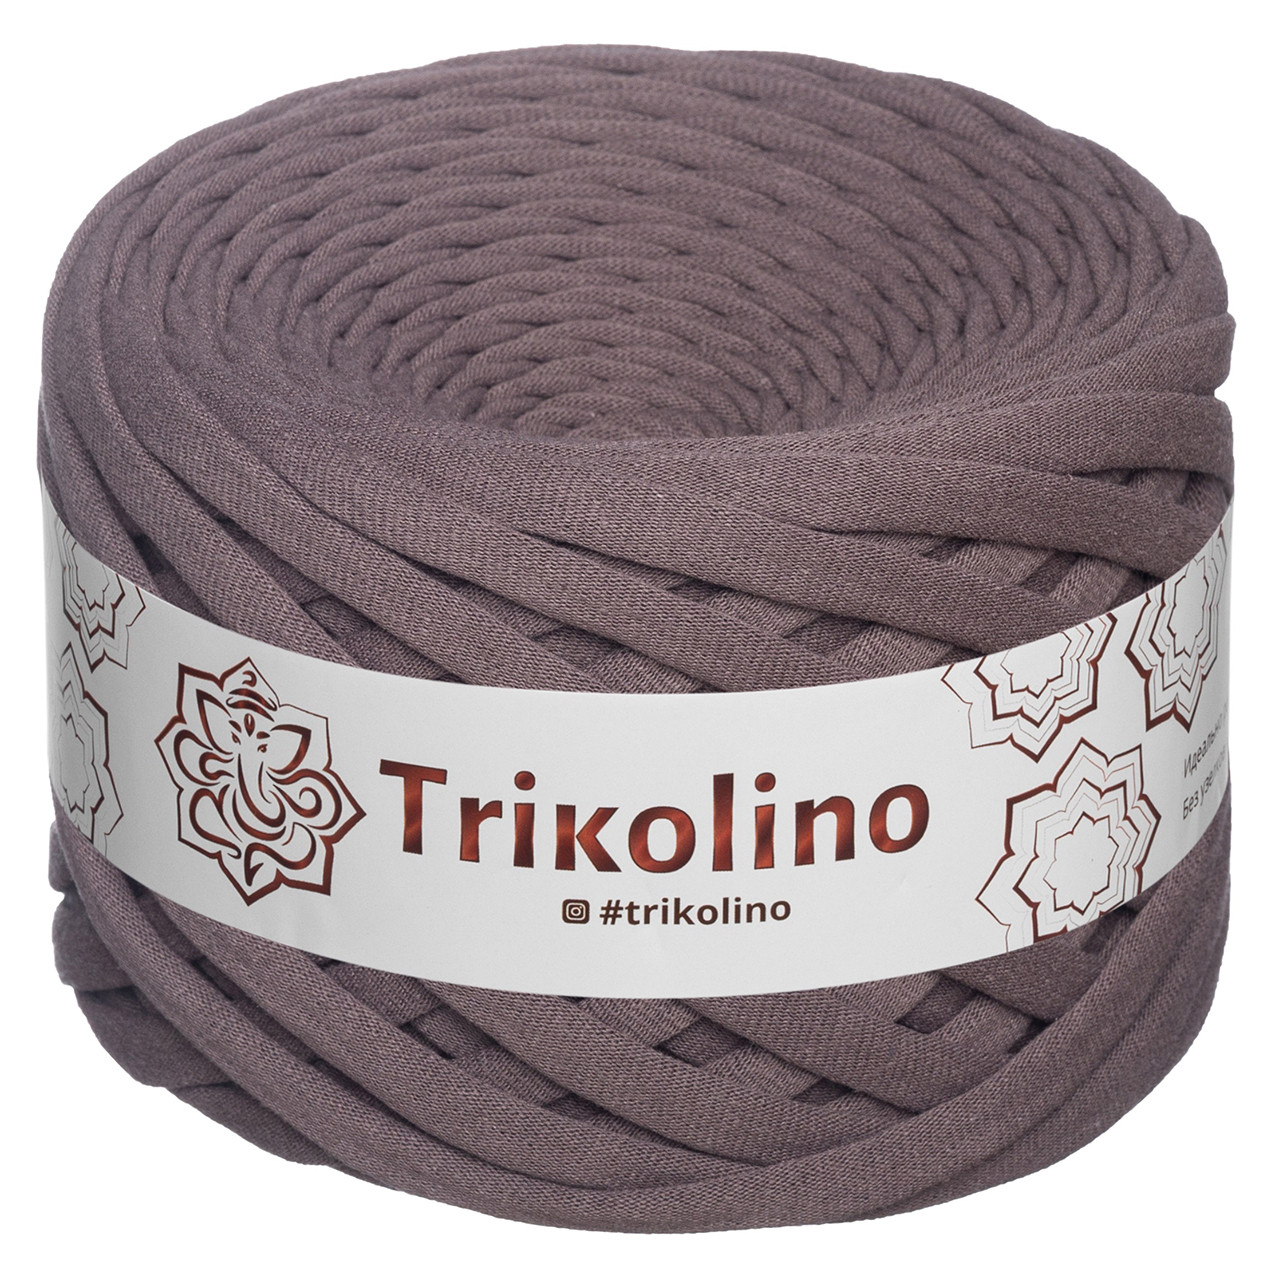 Трикотажна пряжа Trikolino, 7-9 мм., 50 м., Кава, нитки для в'язання